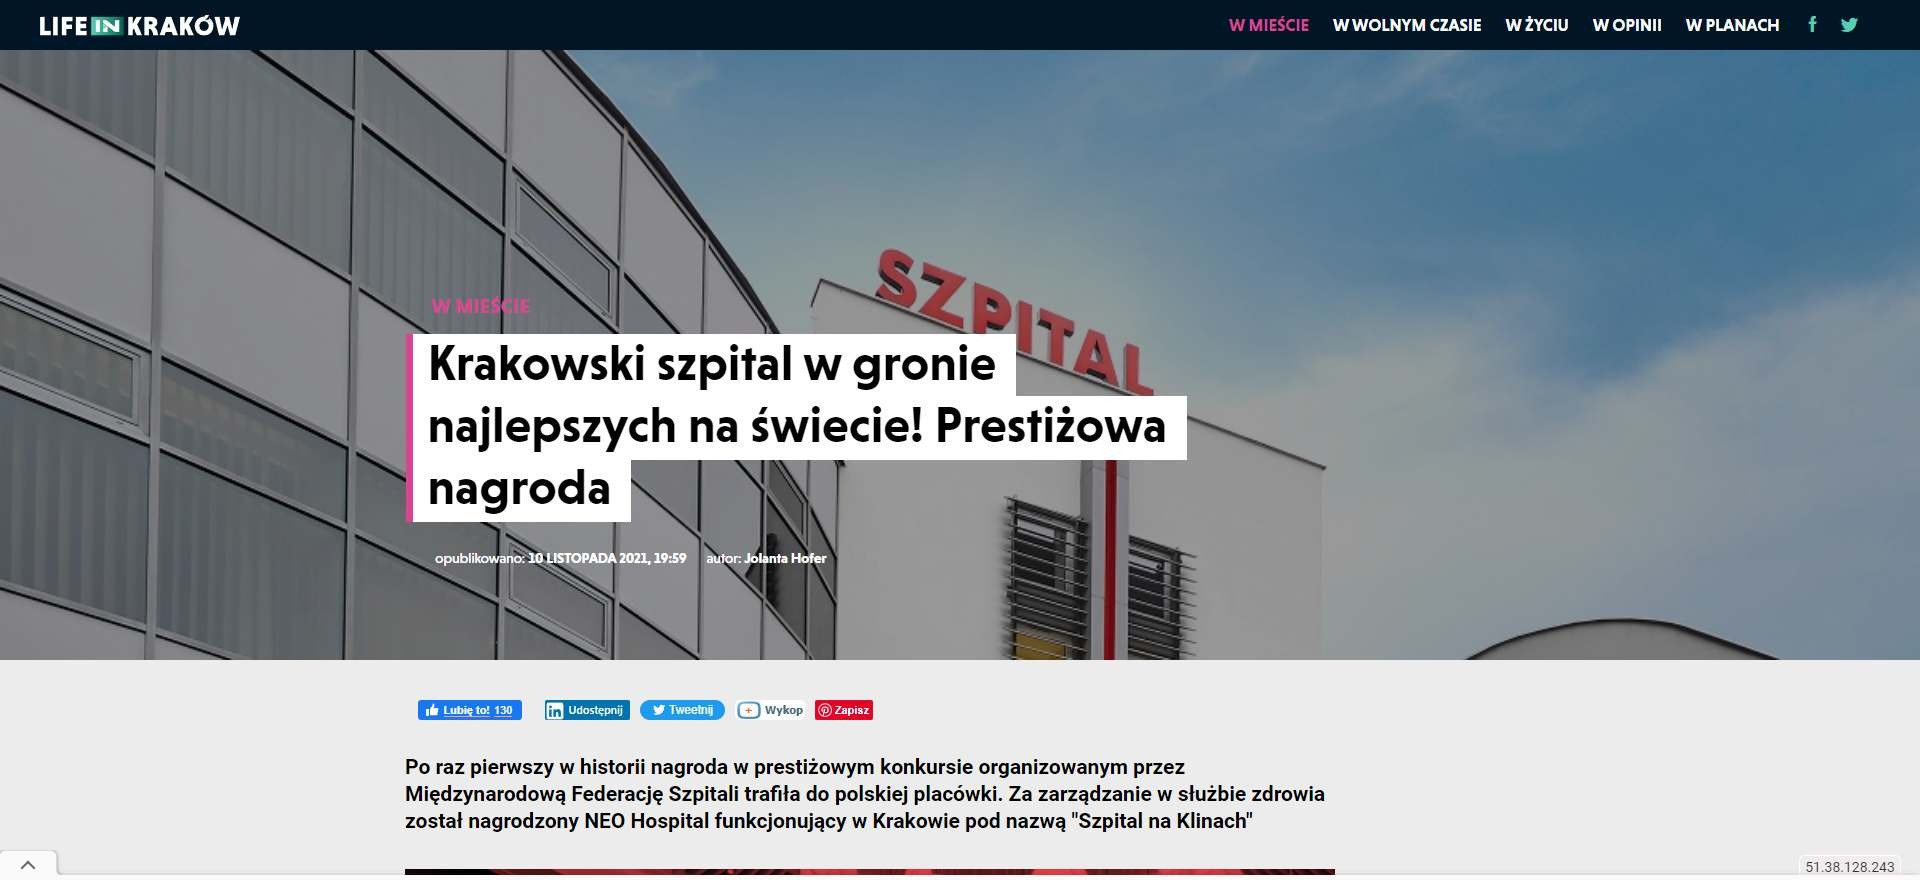 krakowski szpital w gronie najlepszych na swiecie prestizowa nagroda